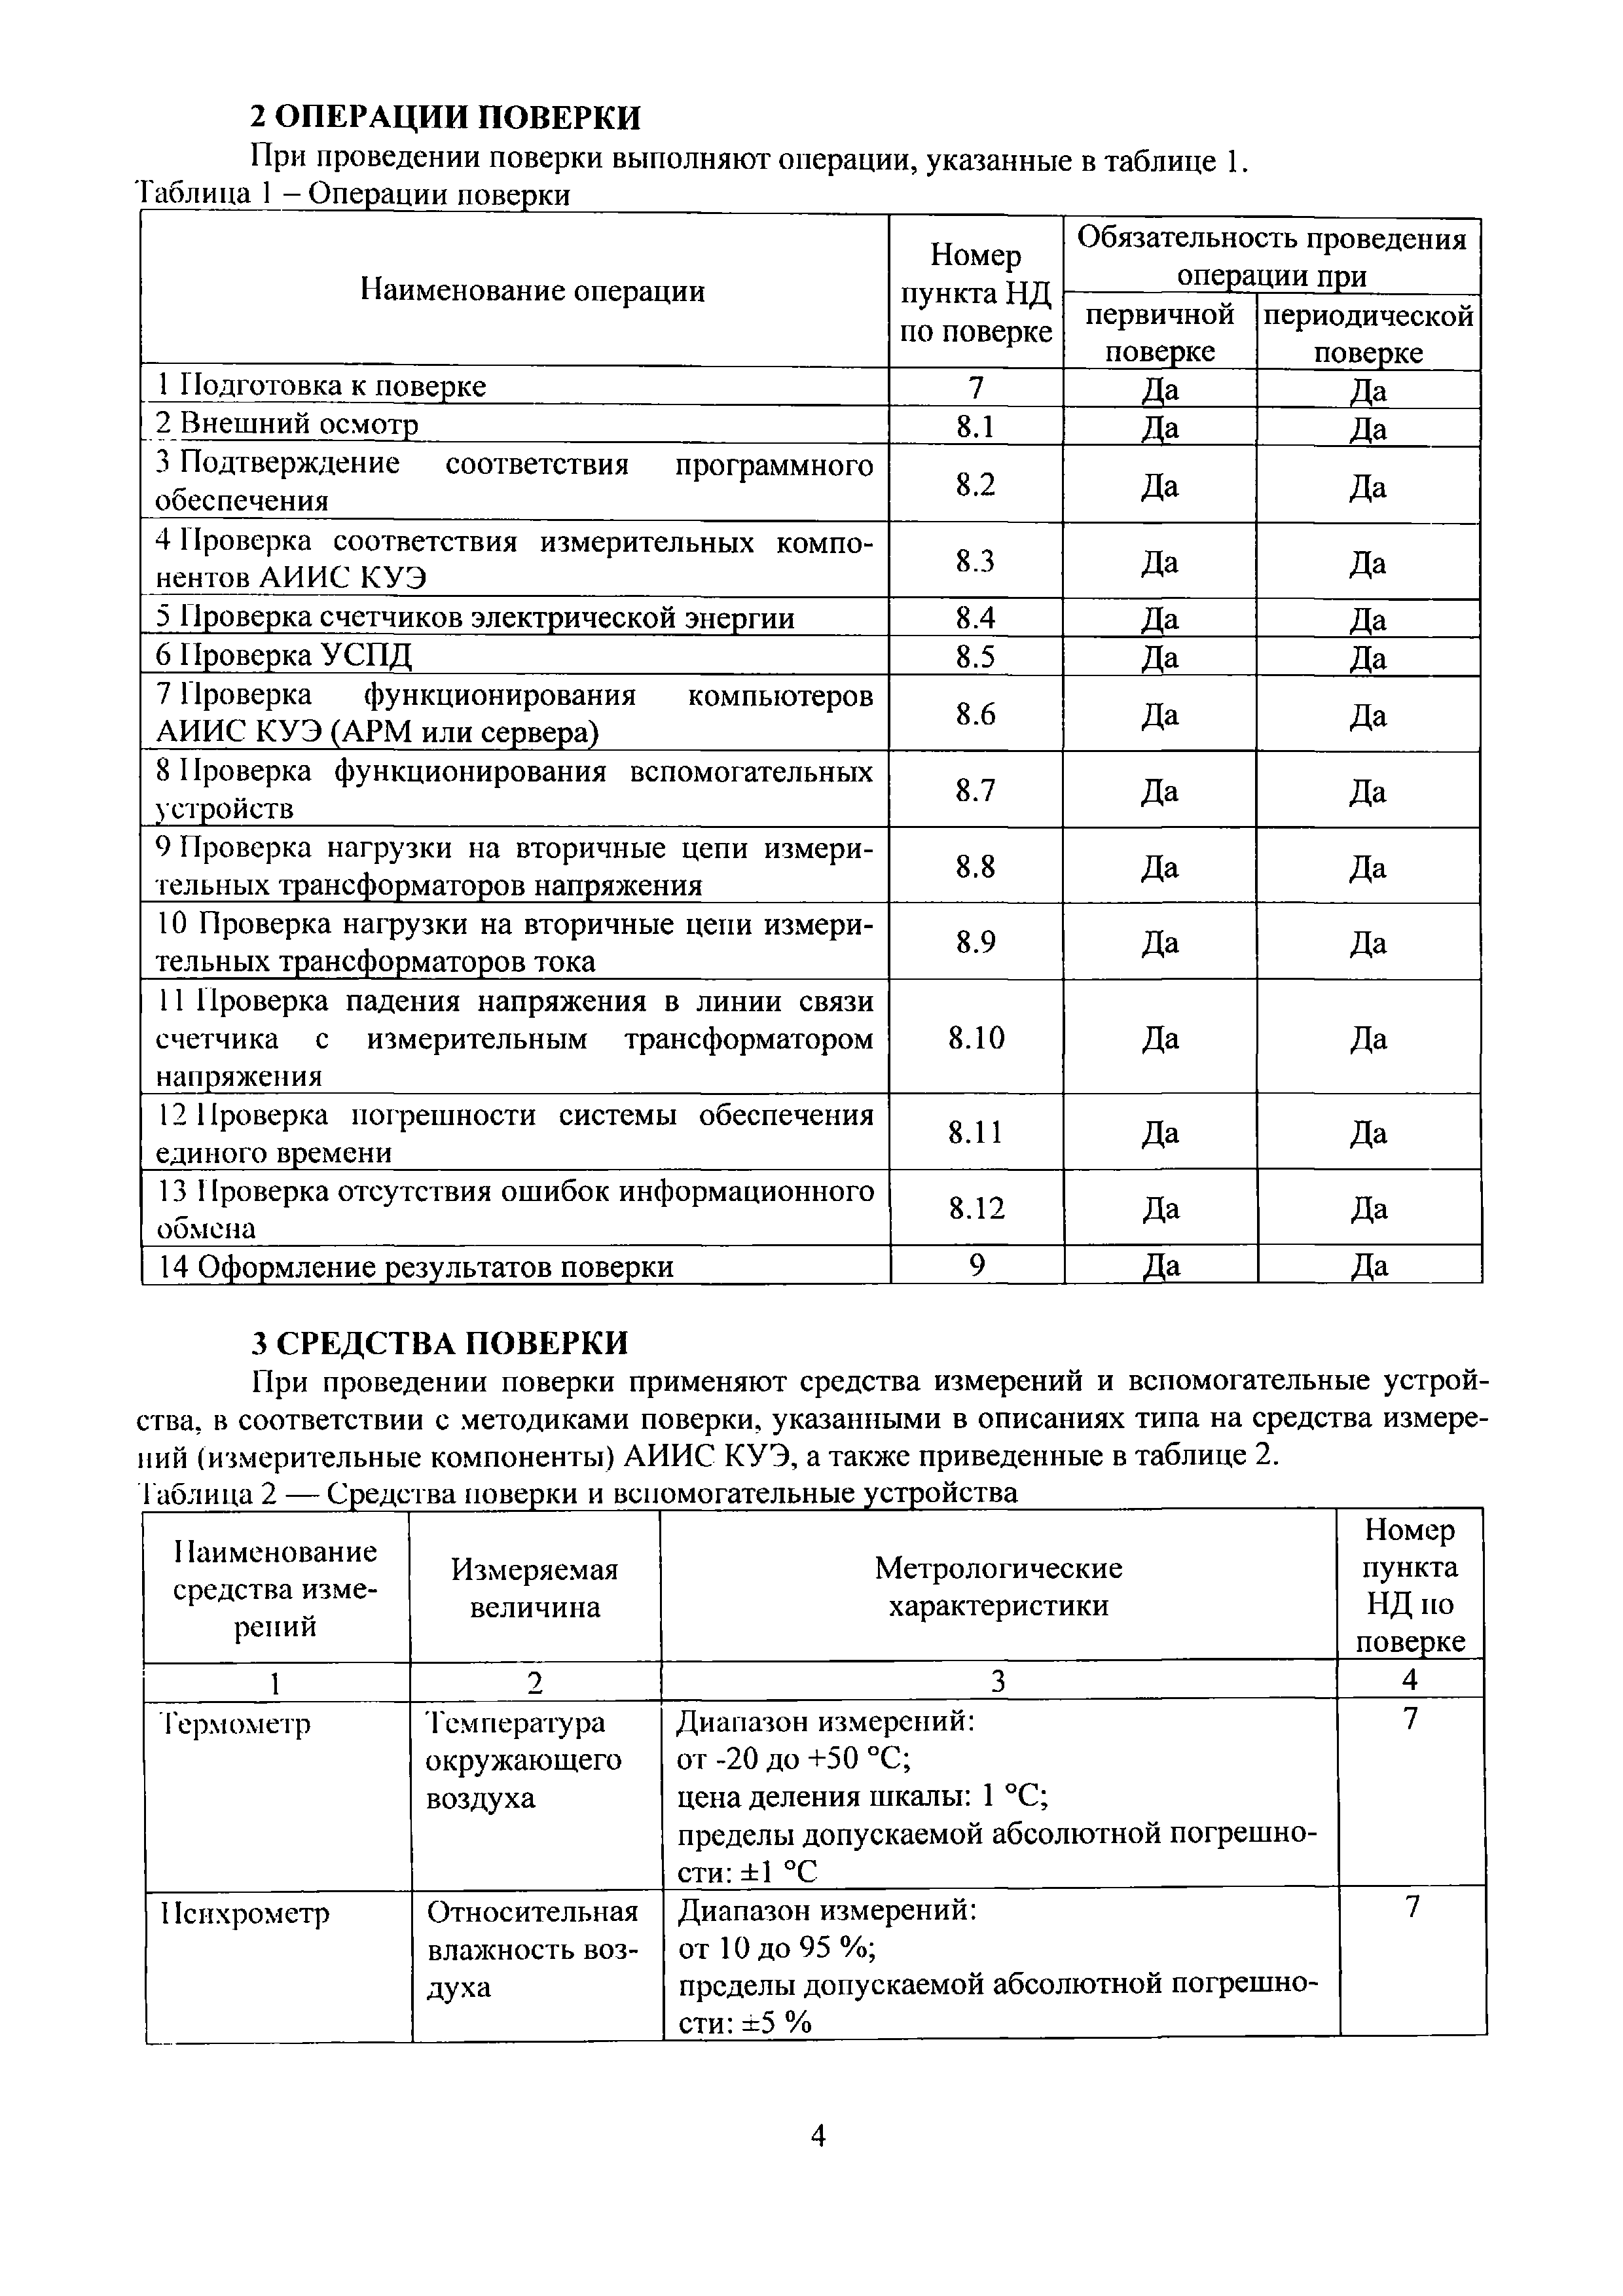 МП ЭПР-228-2020